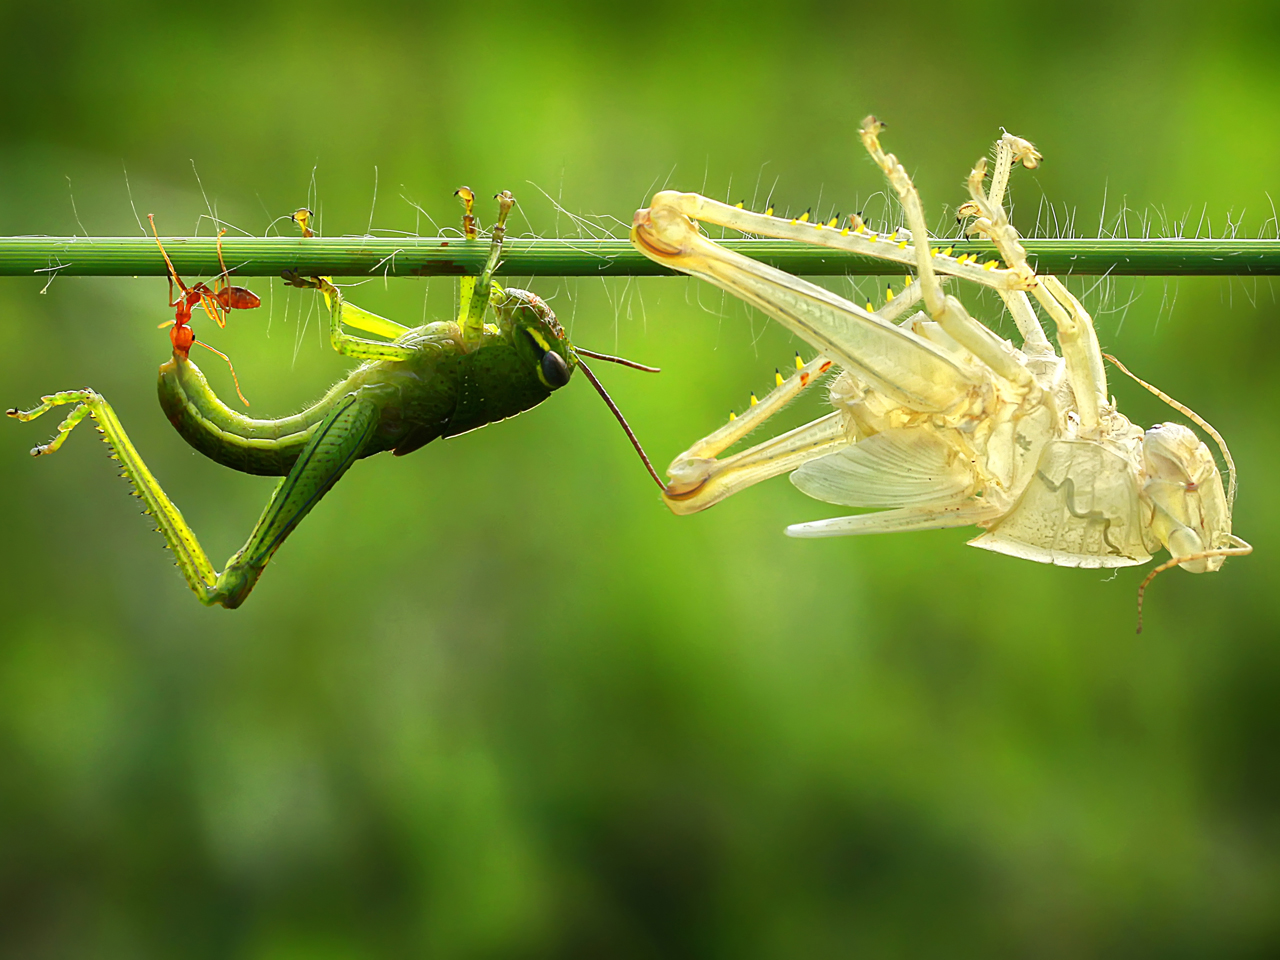 Grasshopper sheds skin in a perfect replica